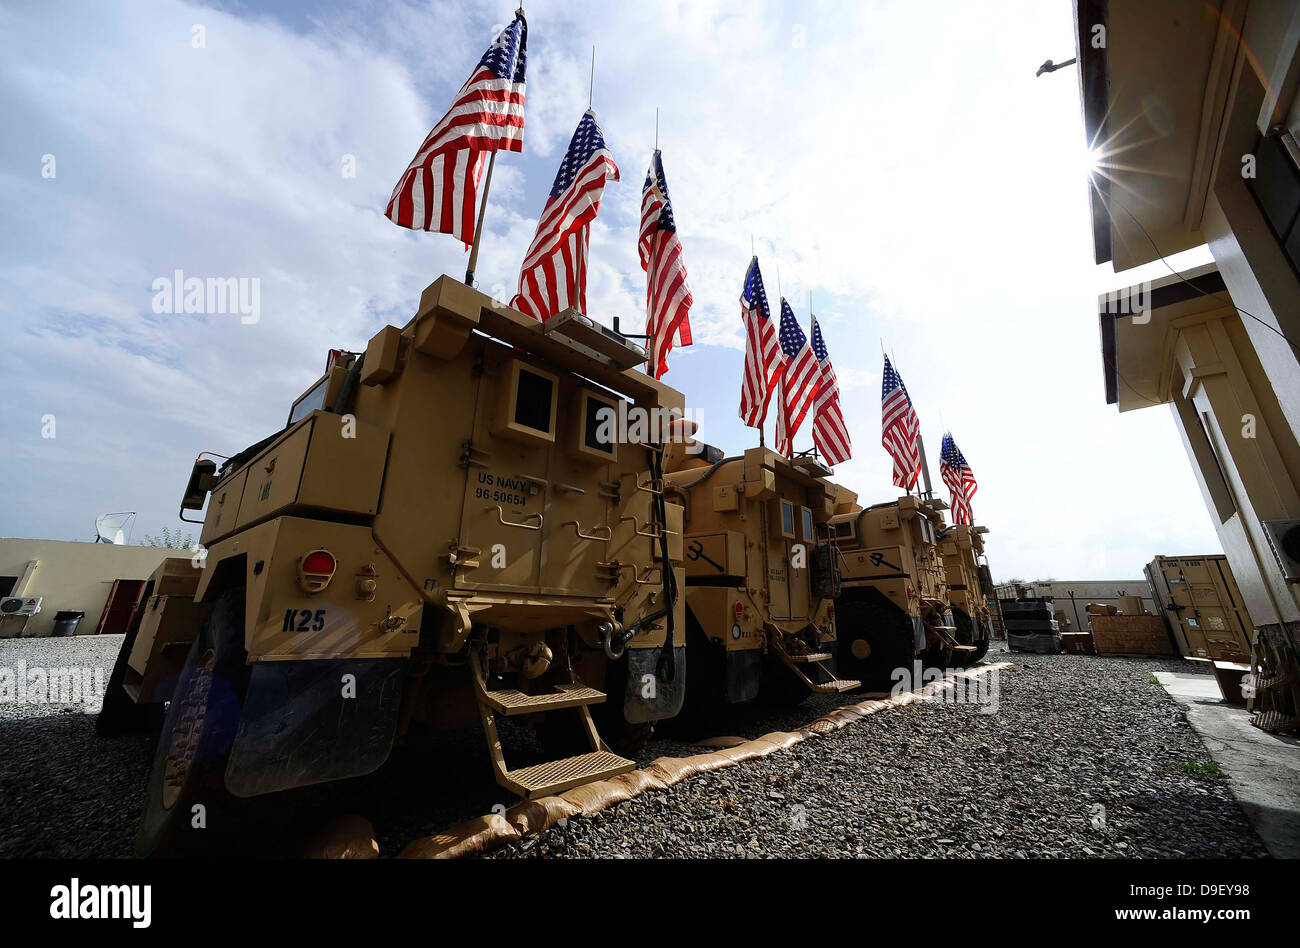 Amerikanische Flaggen werden auf taktische Fahrzeuge im Gedenken an 9/11 angezeigt. Stockfoto